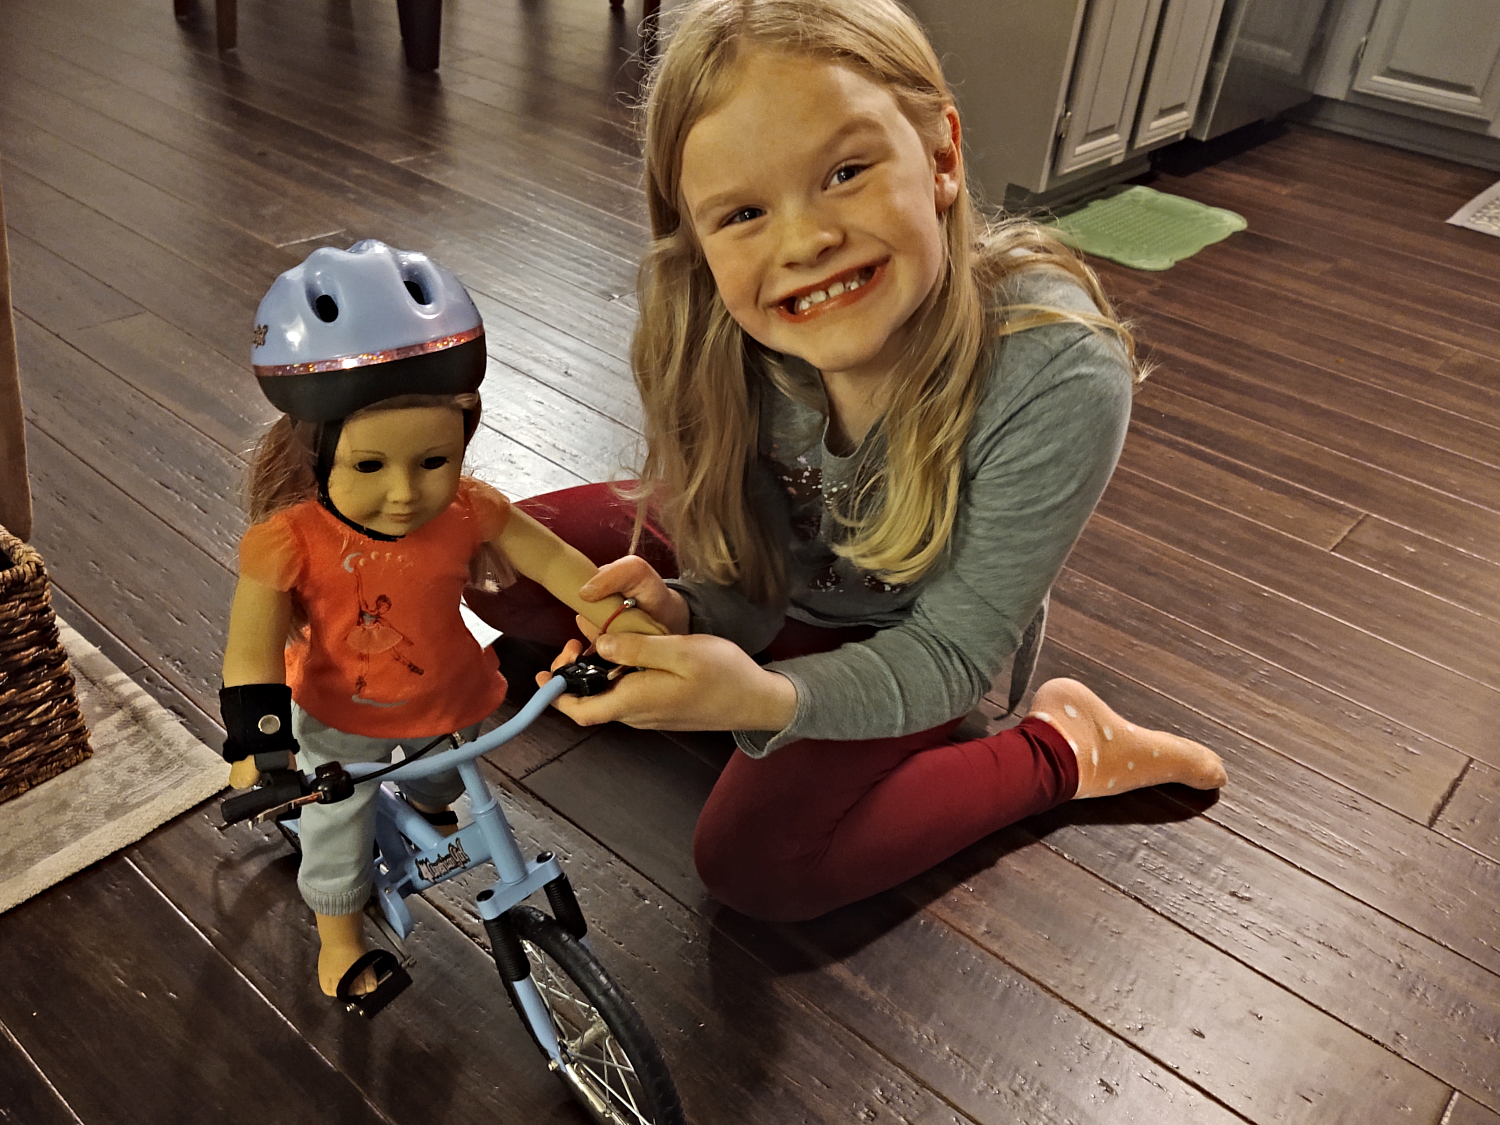 Mari, her doll and her bike